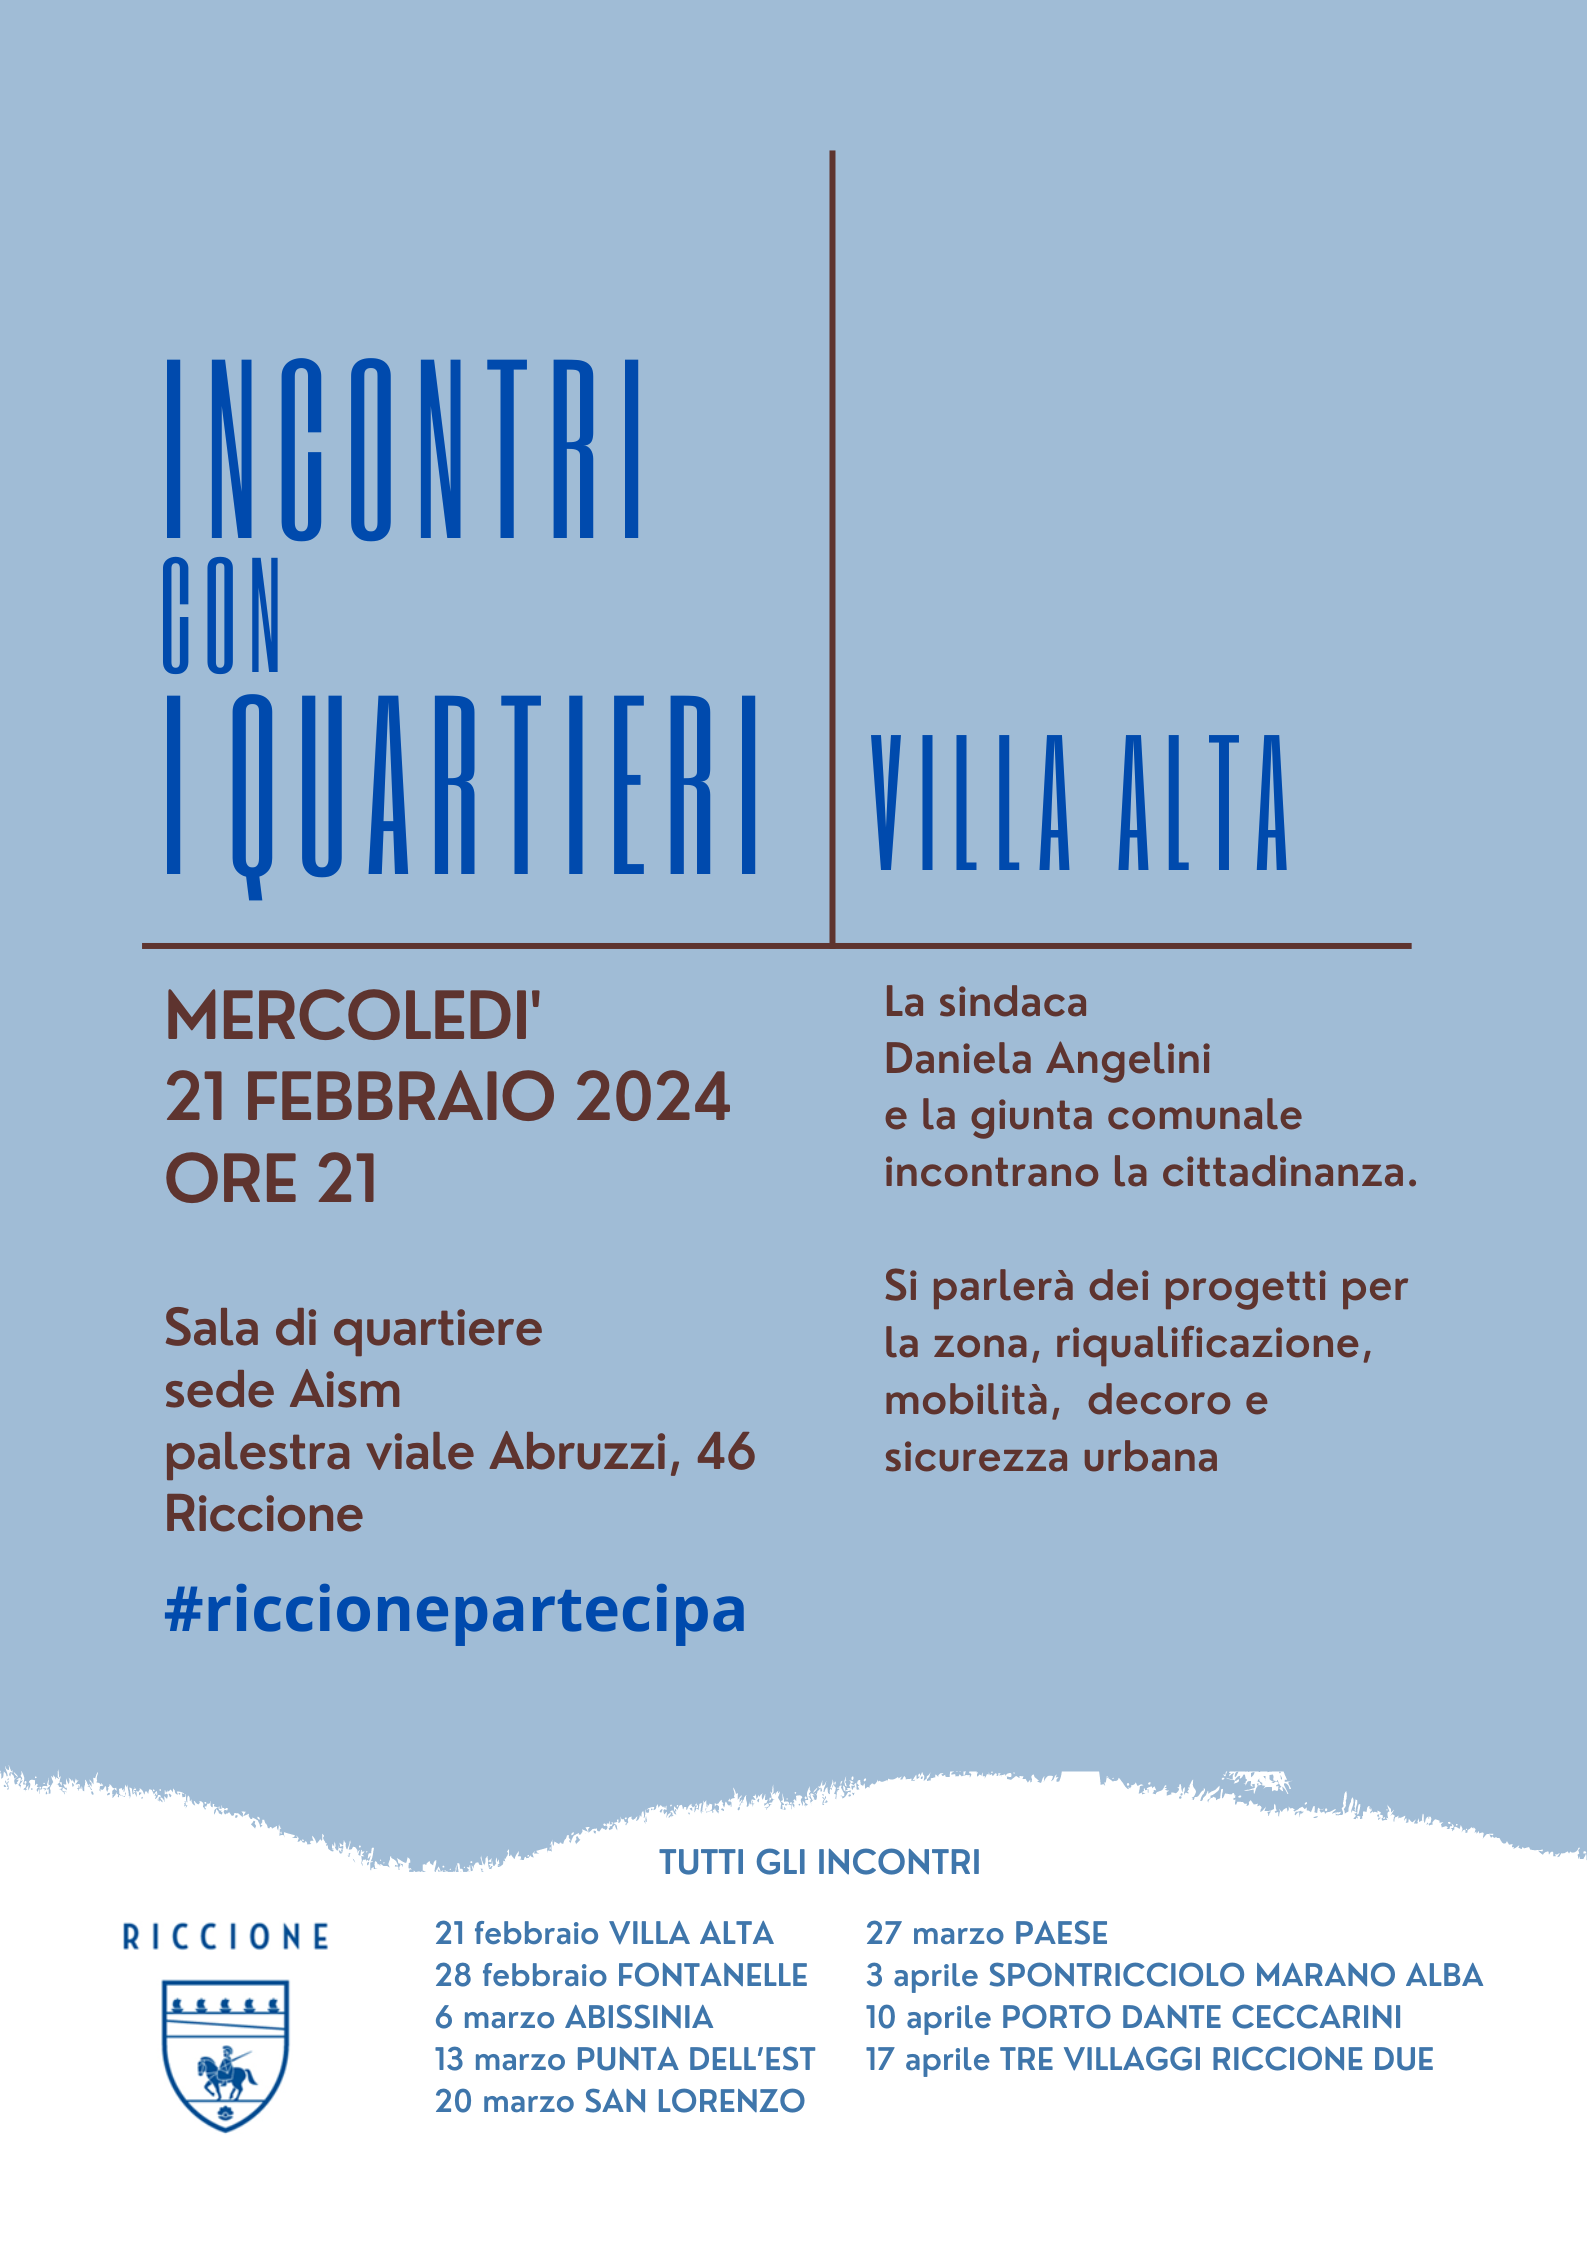 La sindaca Angelini e la giunta comunale domani sera a Villa Alta per ascoltare i cittadini e condividere i progetti